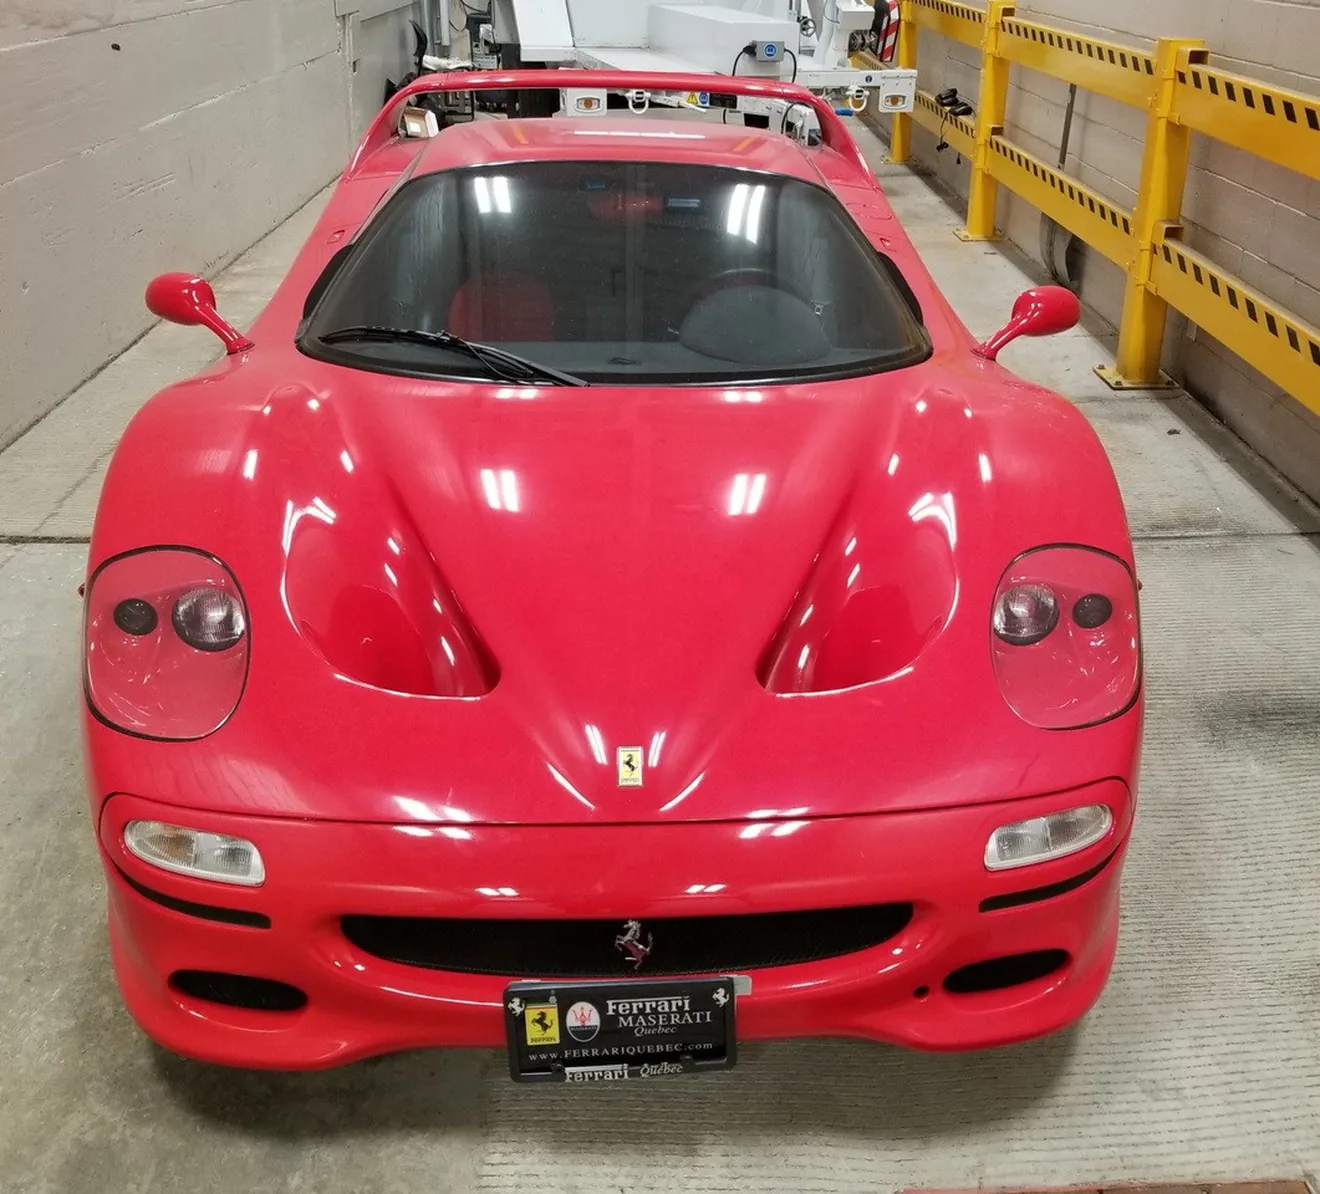 Un Ferrari F50 robado hace 18 años se convierte en el centro de una batalla judicial